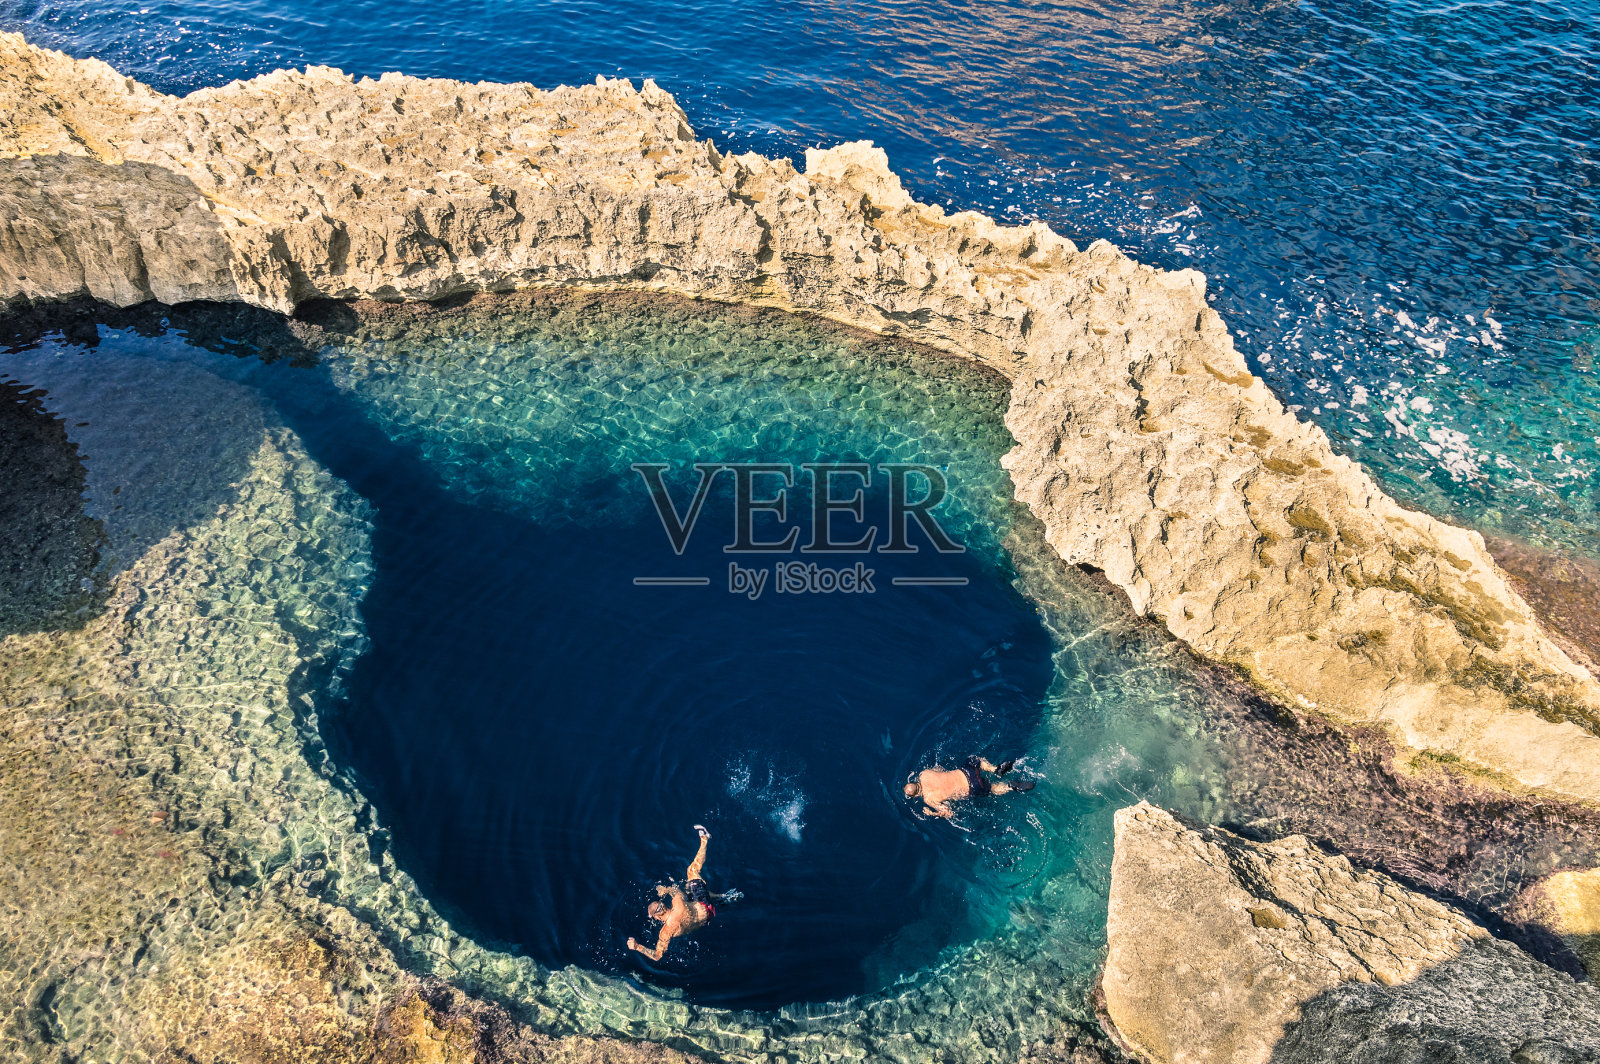 马耳他戈佐岛蔚蓝之窗的蓝洞照片摄影图片